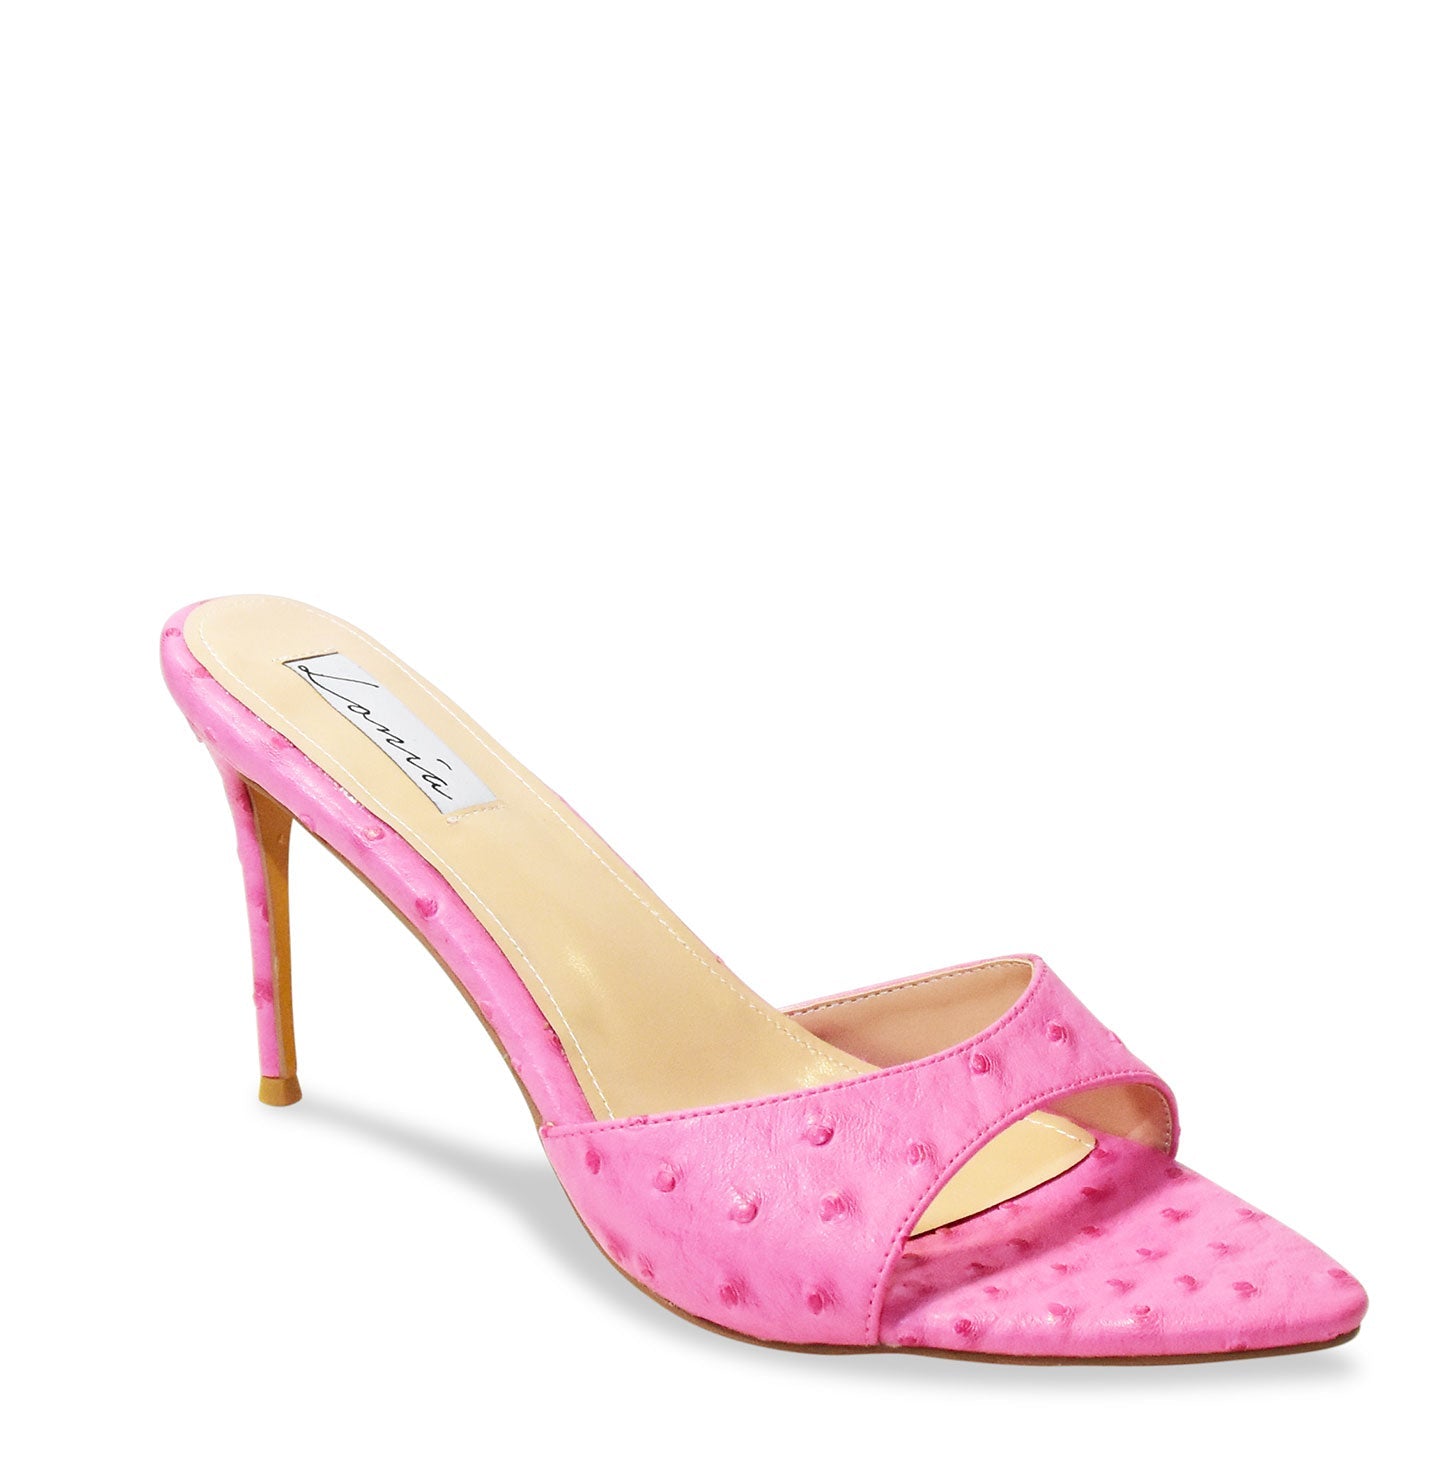 Hermia | Women Shoes Sizes 10-16 | Lonia